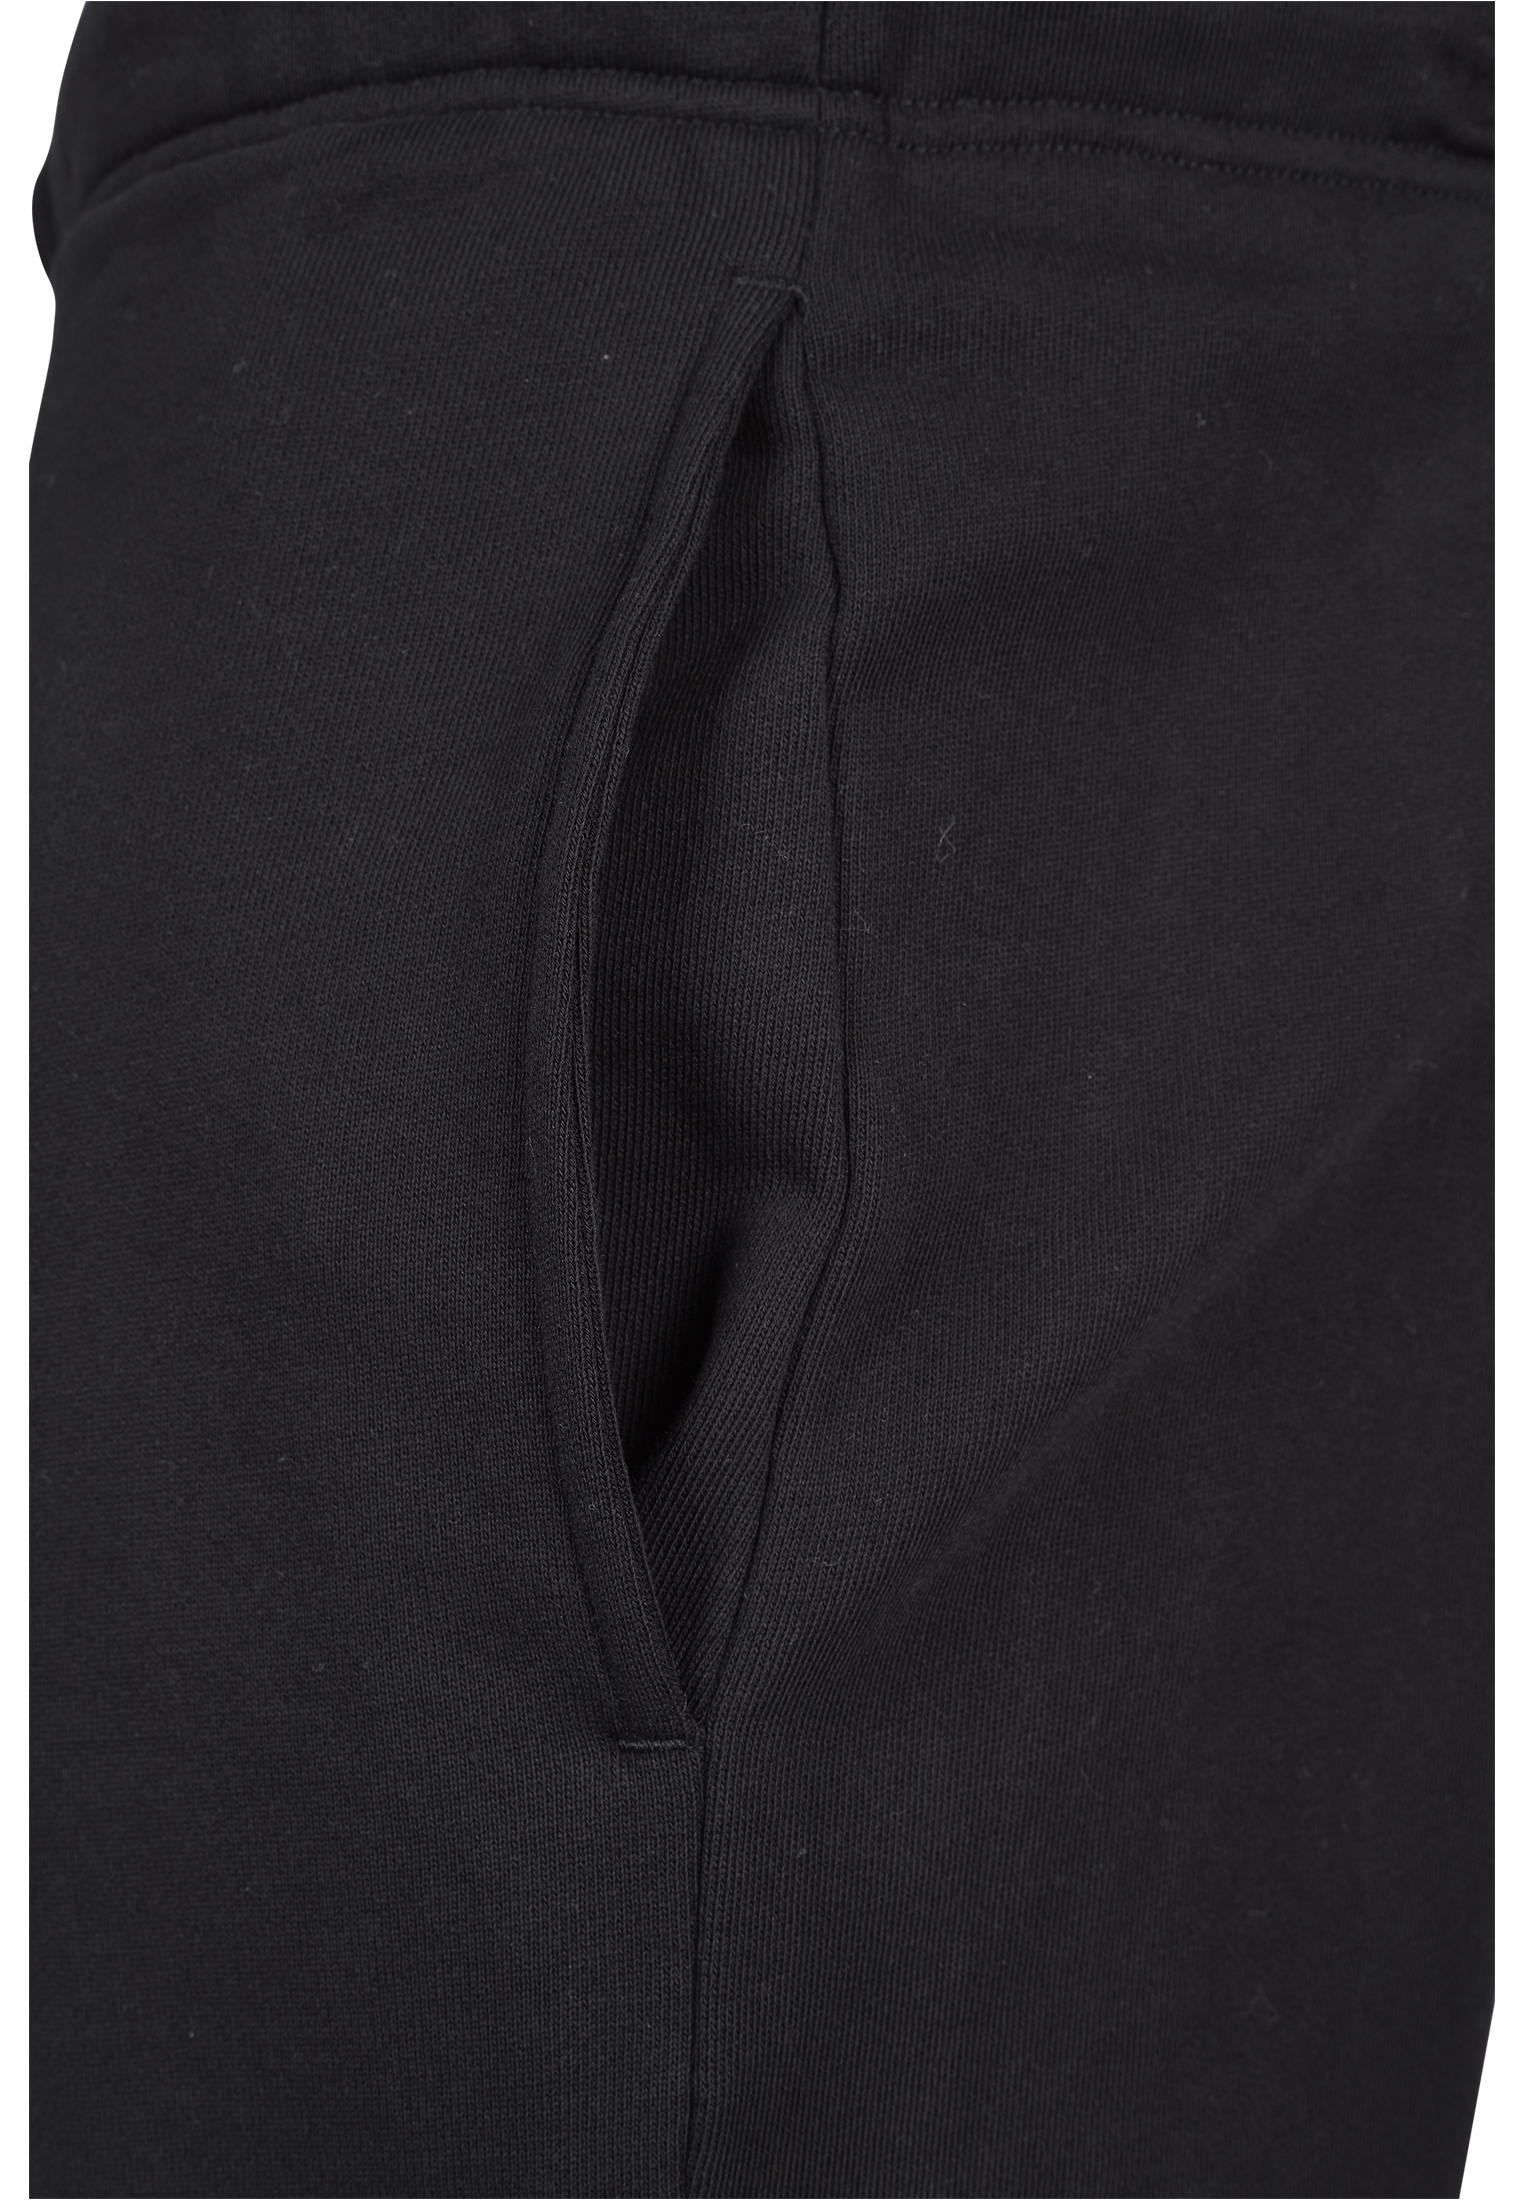 Kurze Hosen Basic Sweatshorts in Farbe black